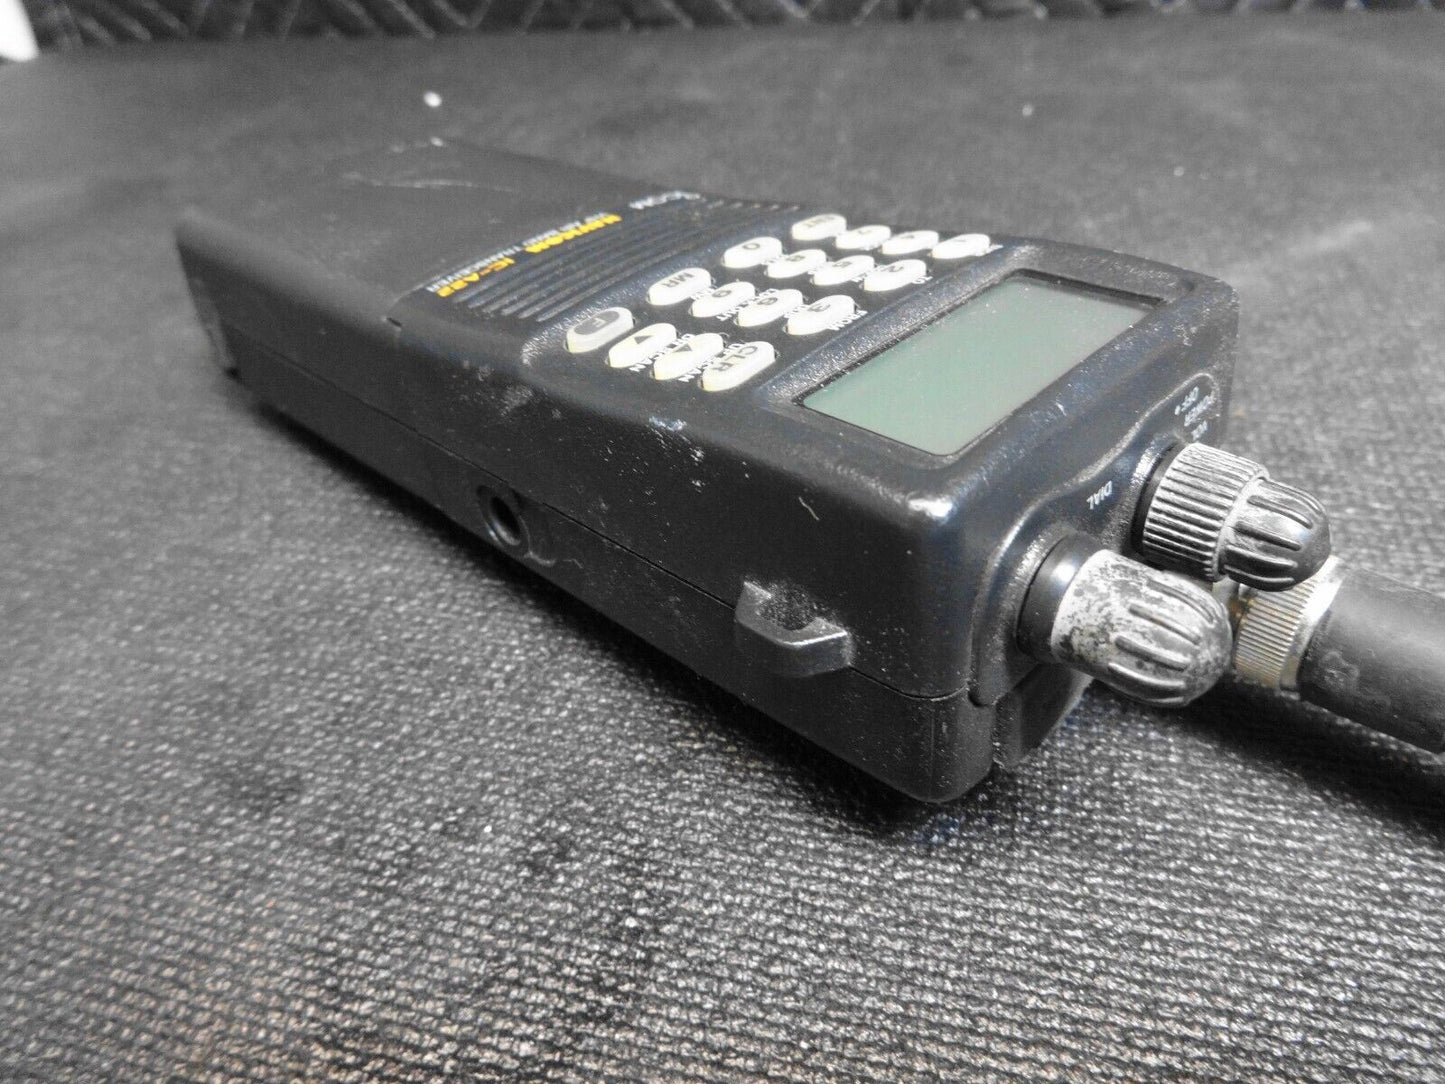 Icom IC-A22 VHF Air Band Transceiver w/ Battery - Handheld Aircraft Monitoring